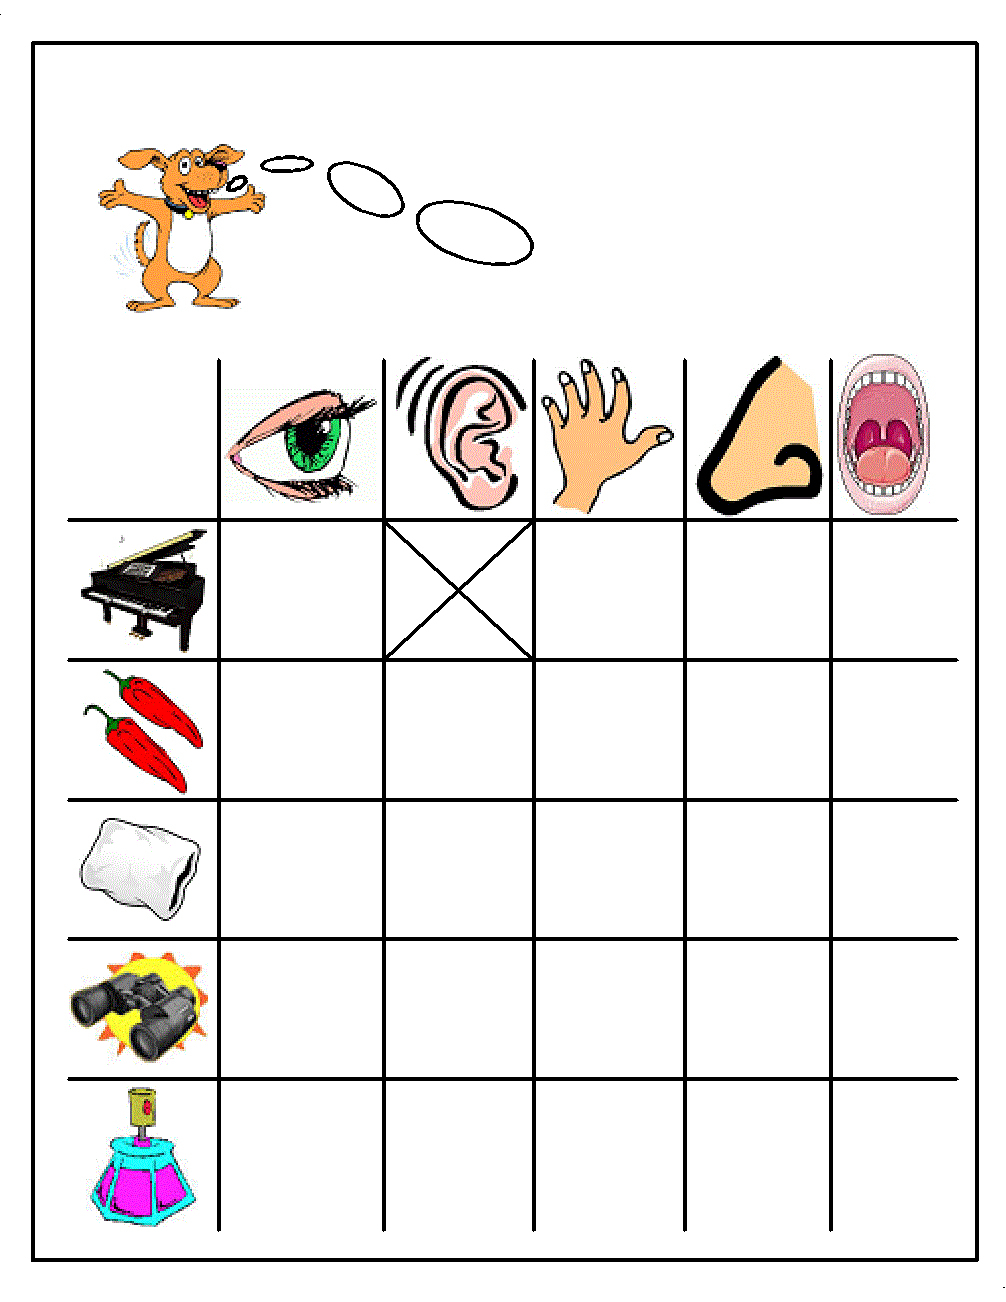 Free Worksheets For Kids – With Kindergarten English Printables Also | Free Printable Worksheets For Preschool Teachers